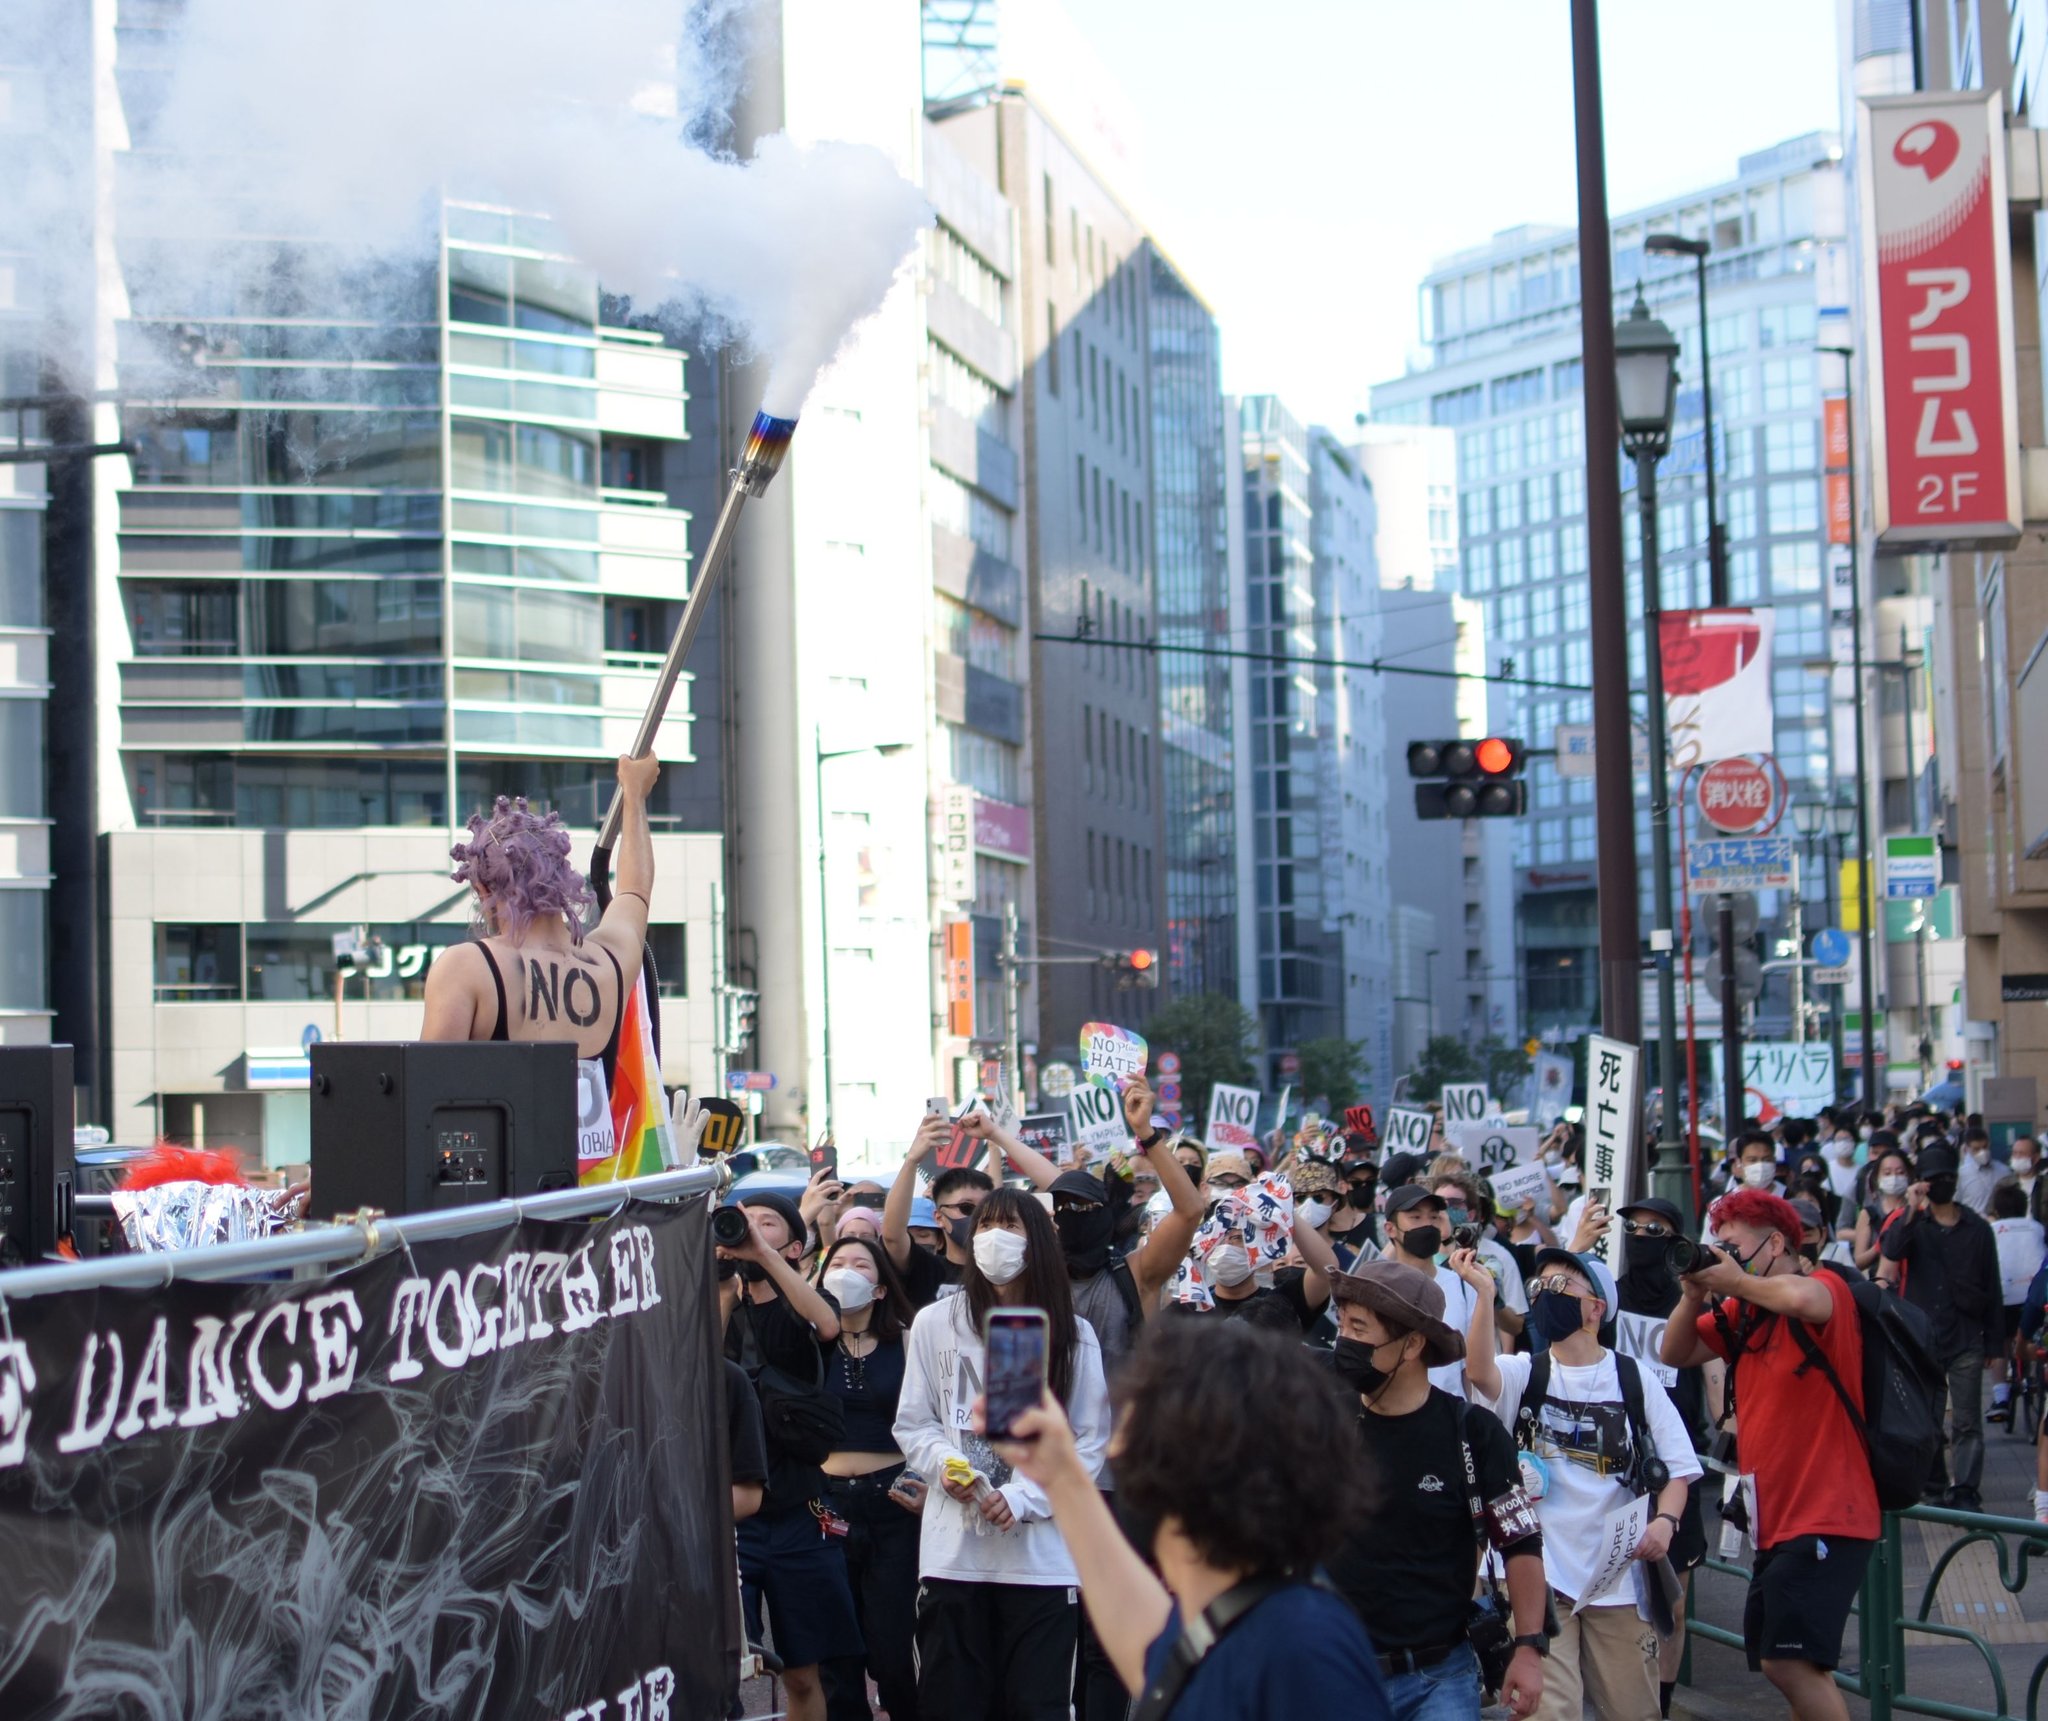 Maedatomoya 東京 新宿駅周辺です 東京五輪の開催中止をはじめ 今の政治にノーを突きつけるデモが行われています 呼びかけはプロテストレイヴ デモでは 聖火も登場しました この後 新宿 アルタ前でイベントも行います Protestravetosayno0718